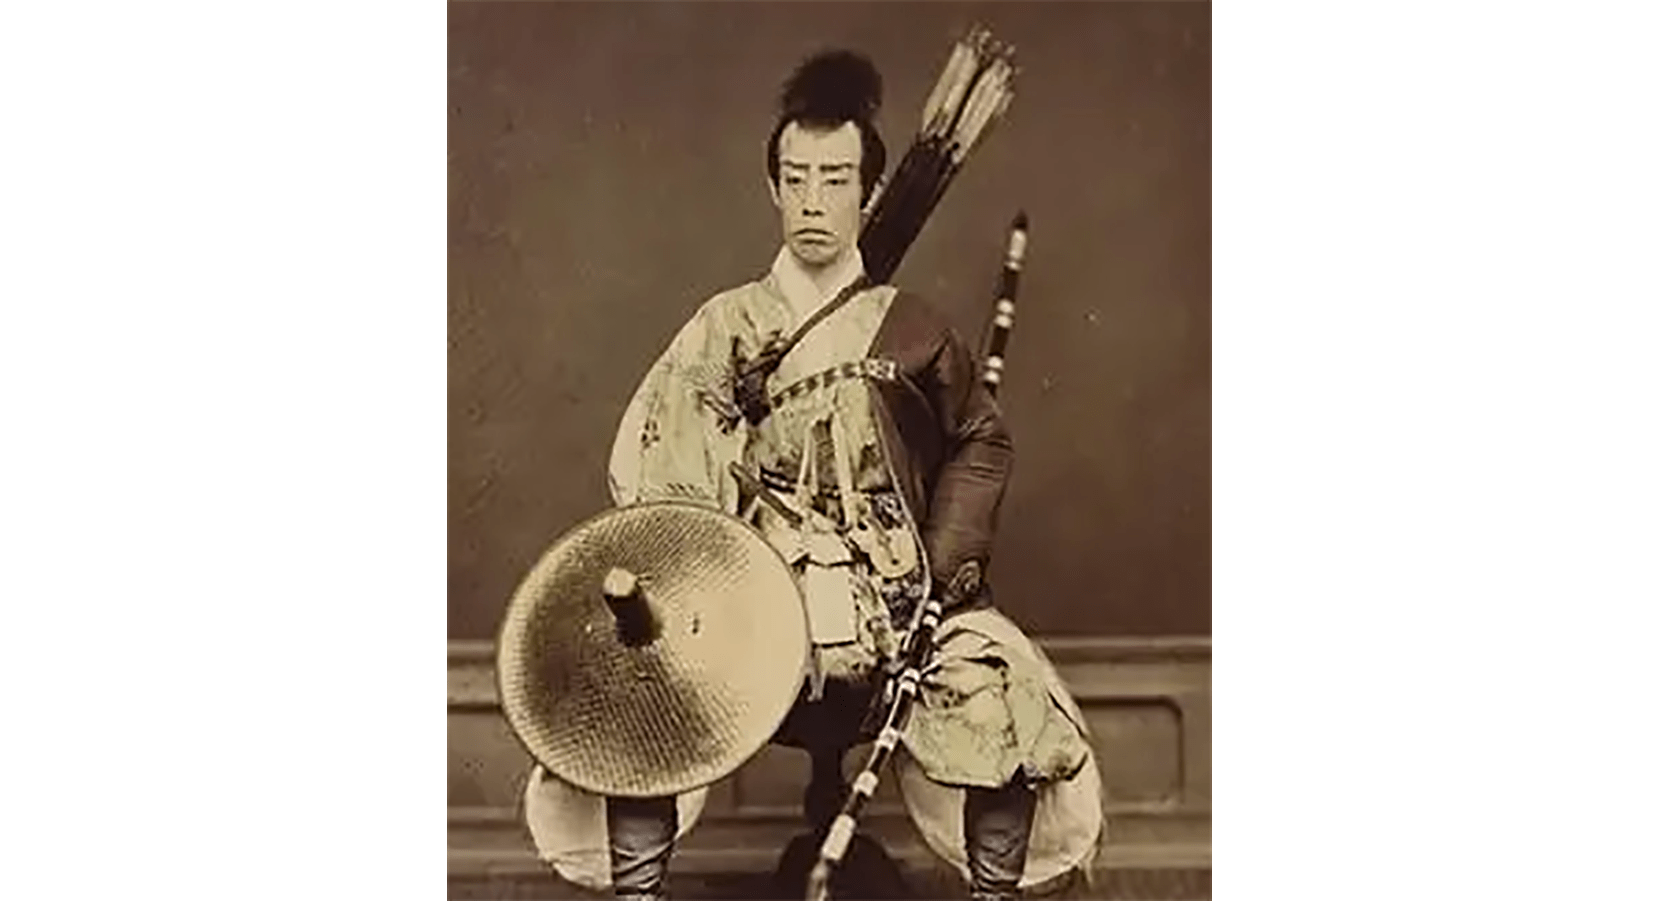 扎着朝天发型的武士日本的武士道精神对日本发展的影响非常巨大,它